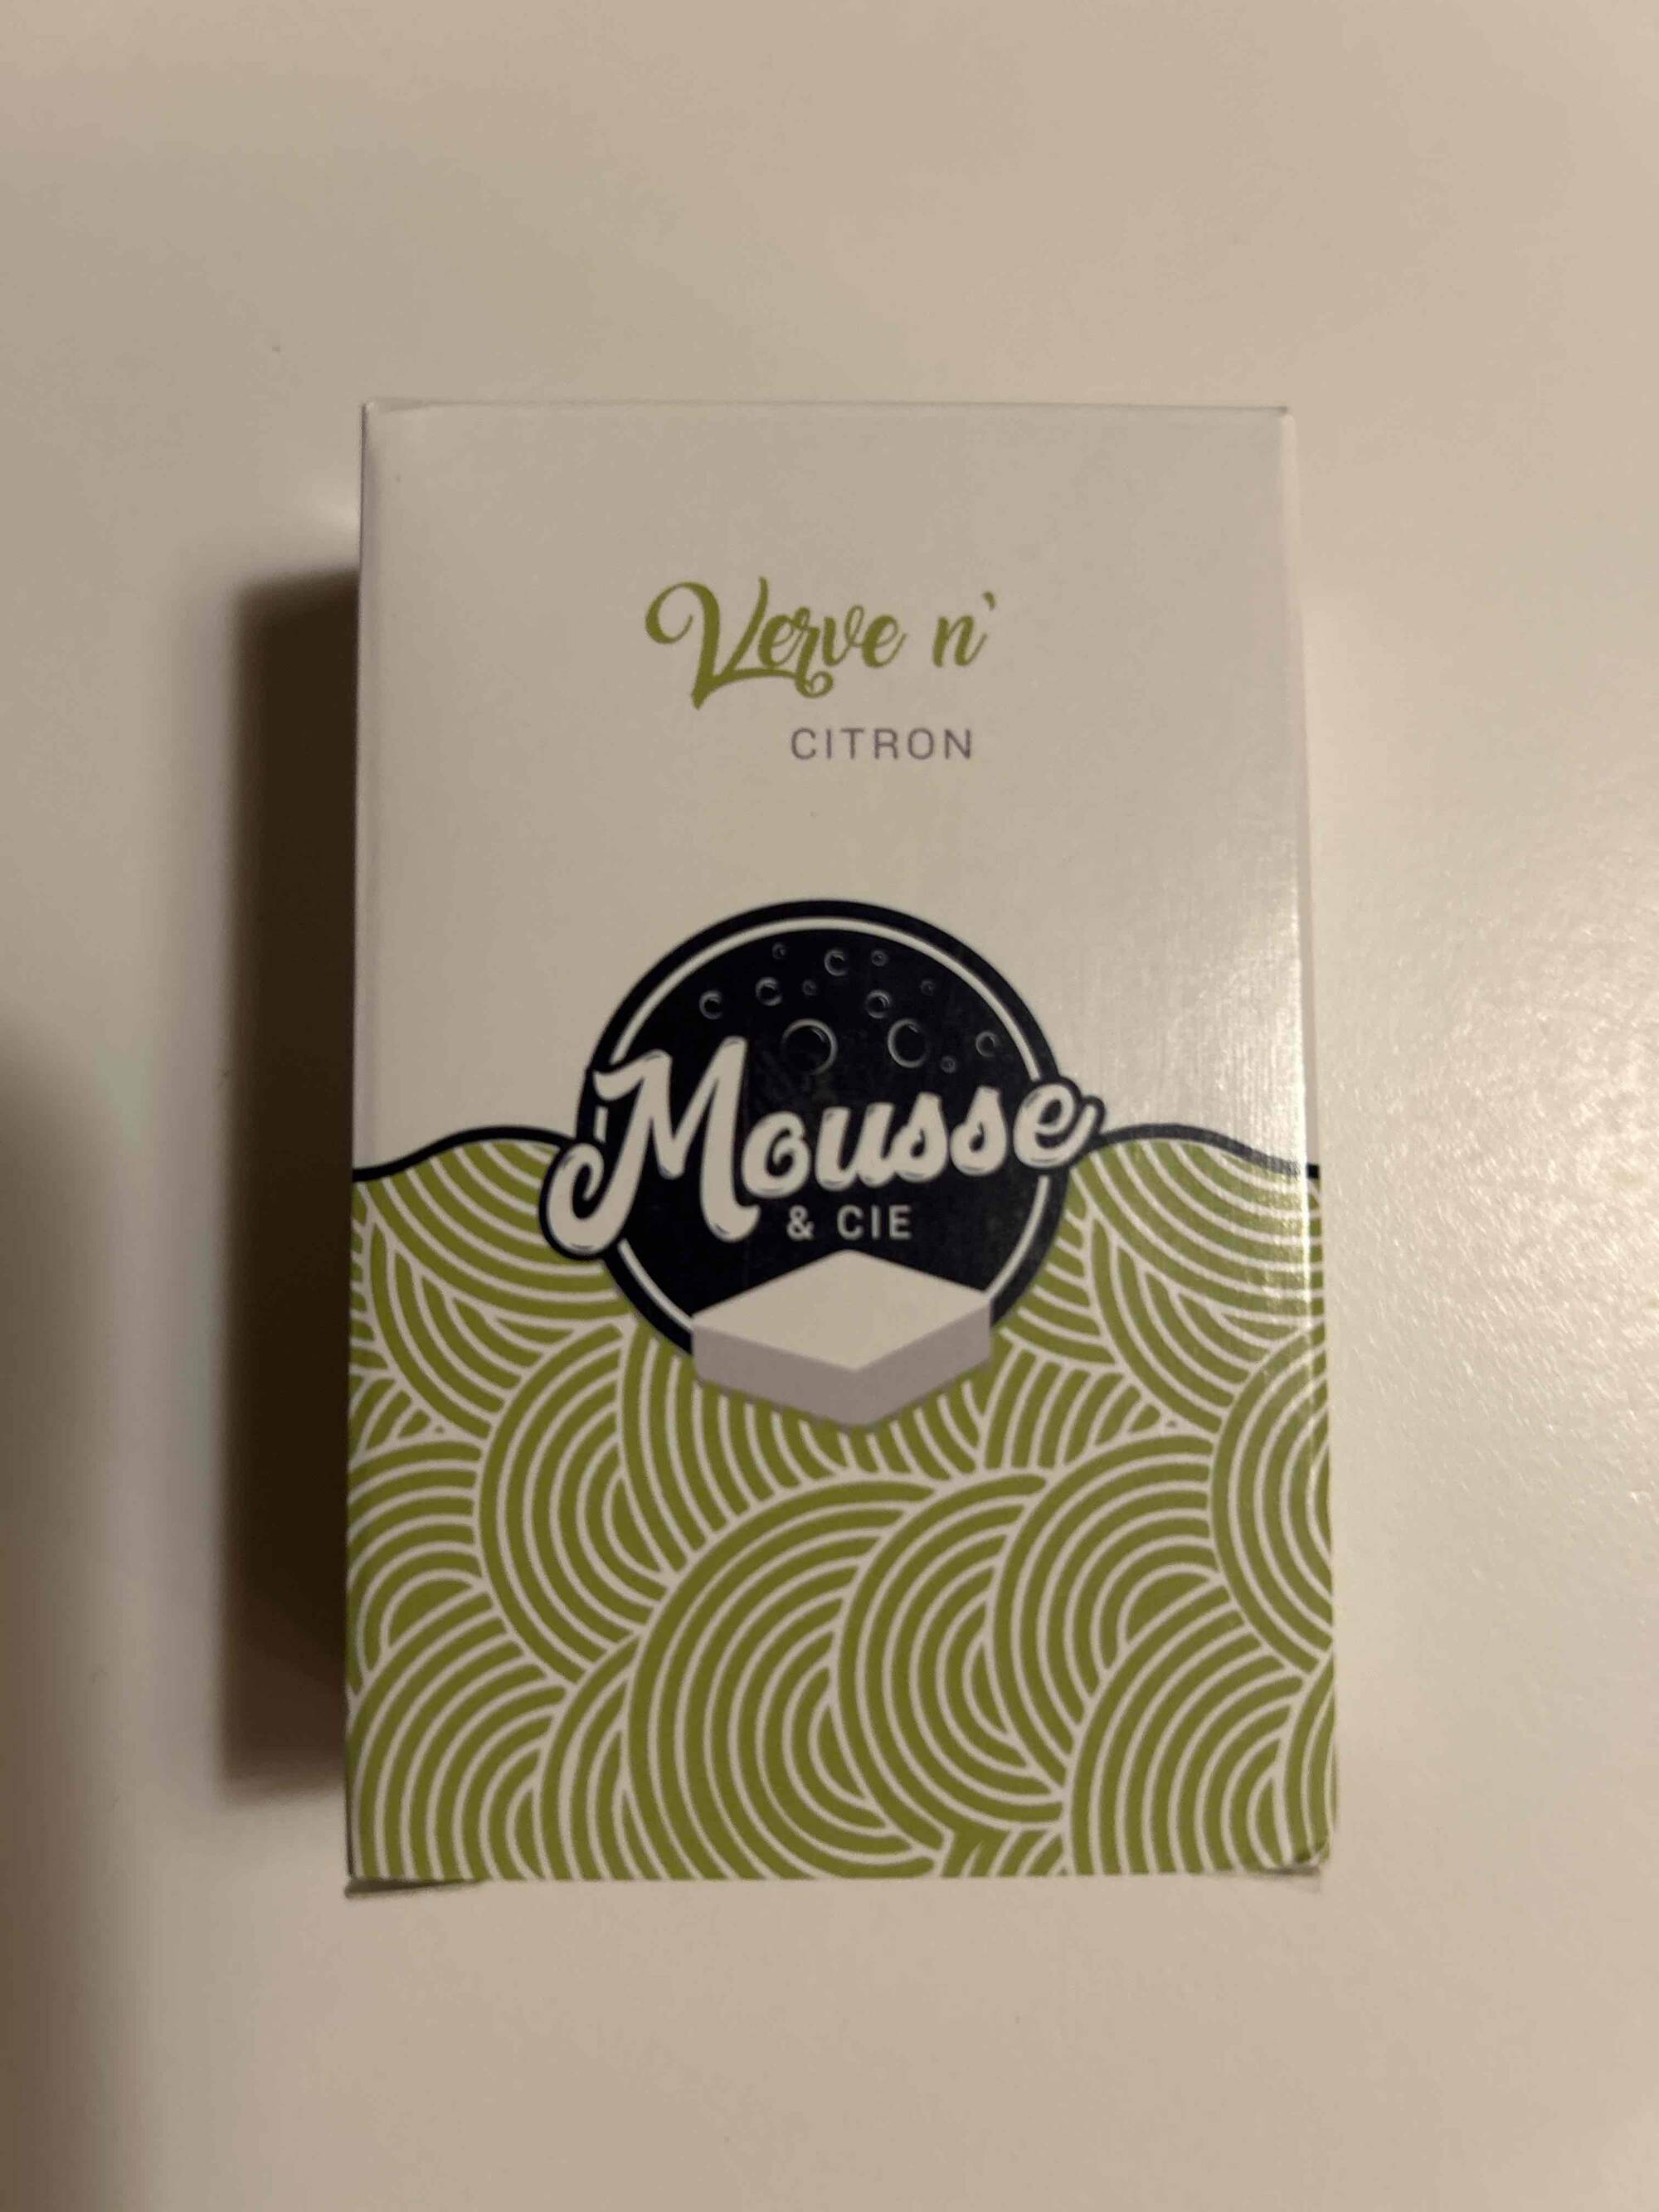 MOUSSE & CIE - Verve n' citron - Savon plaisir